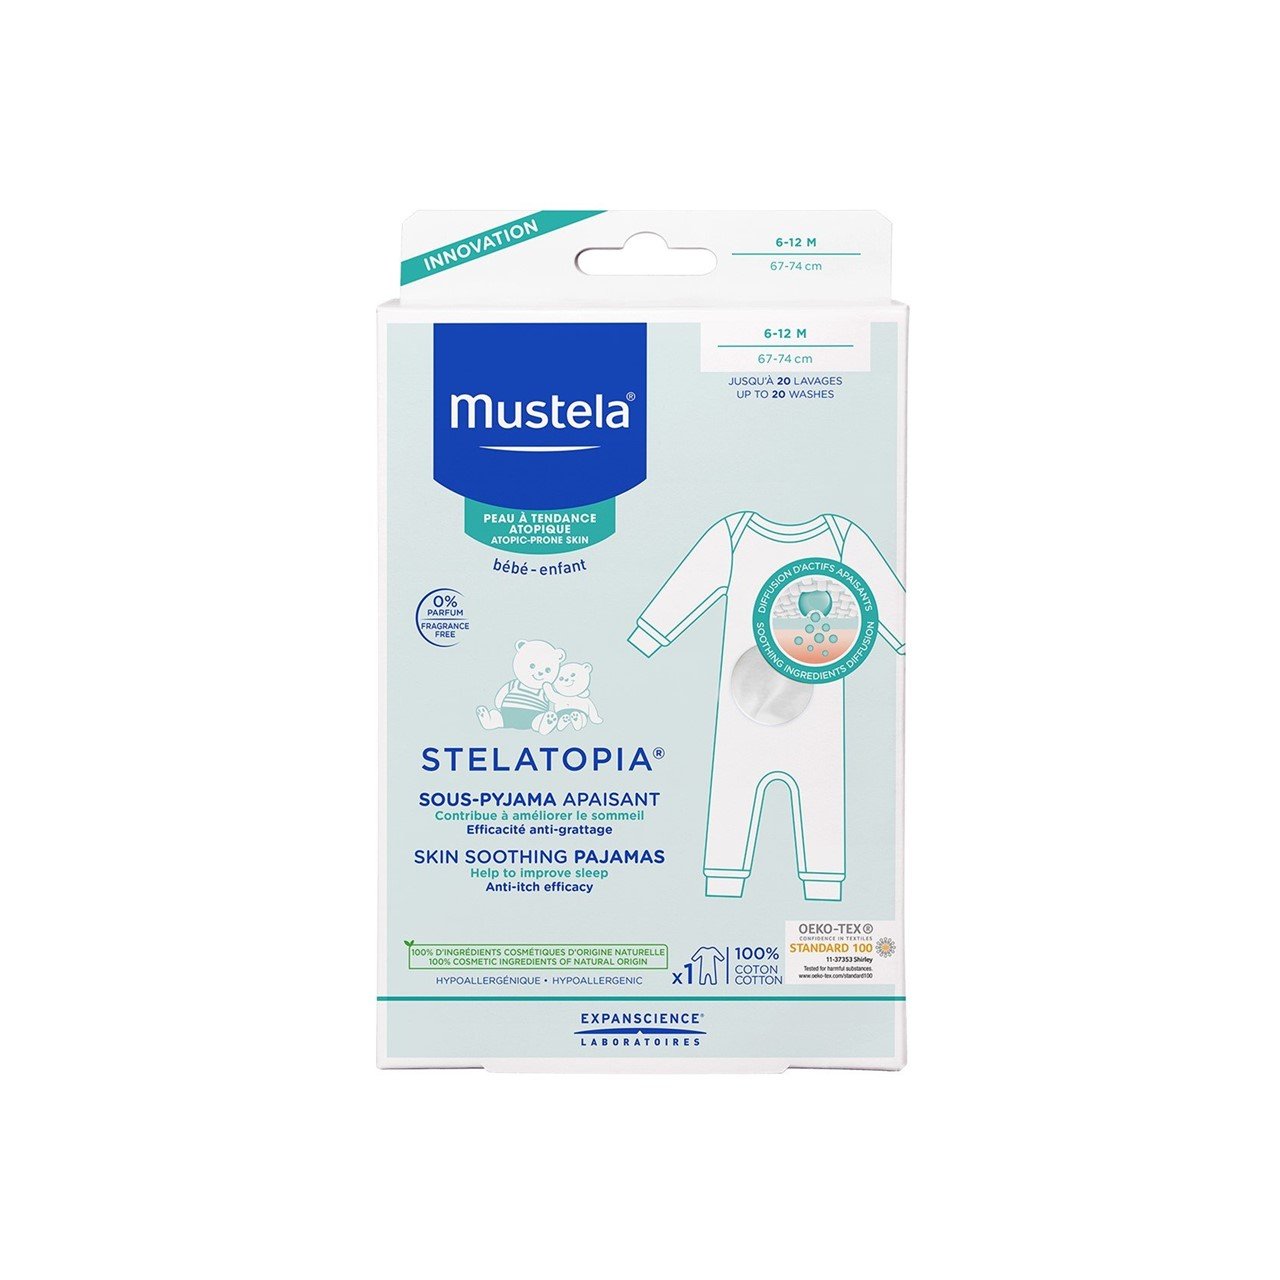 Mustela Stelatopia Skin Soothing Pajamas 6-12 Months x1